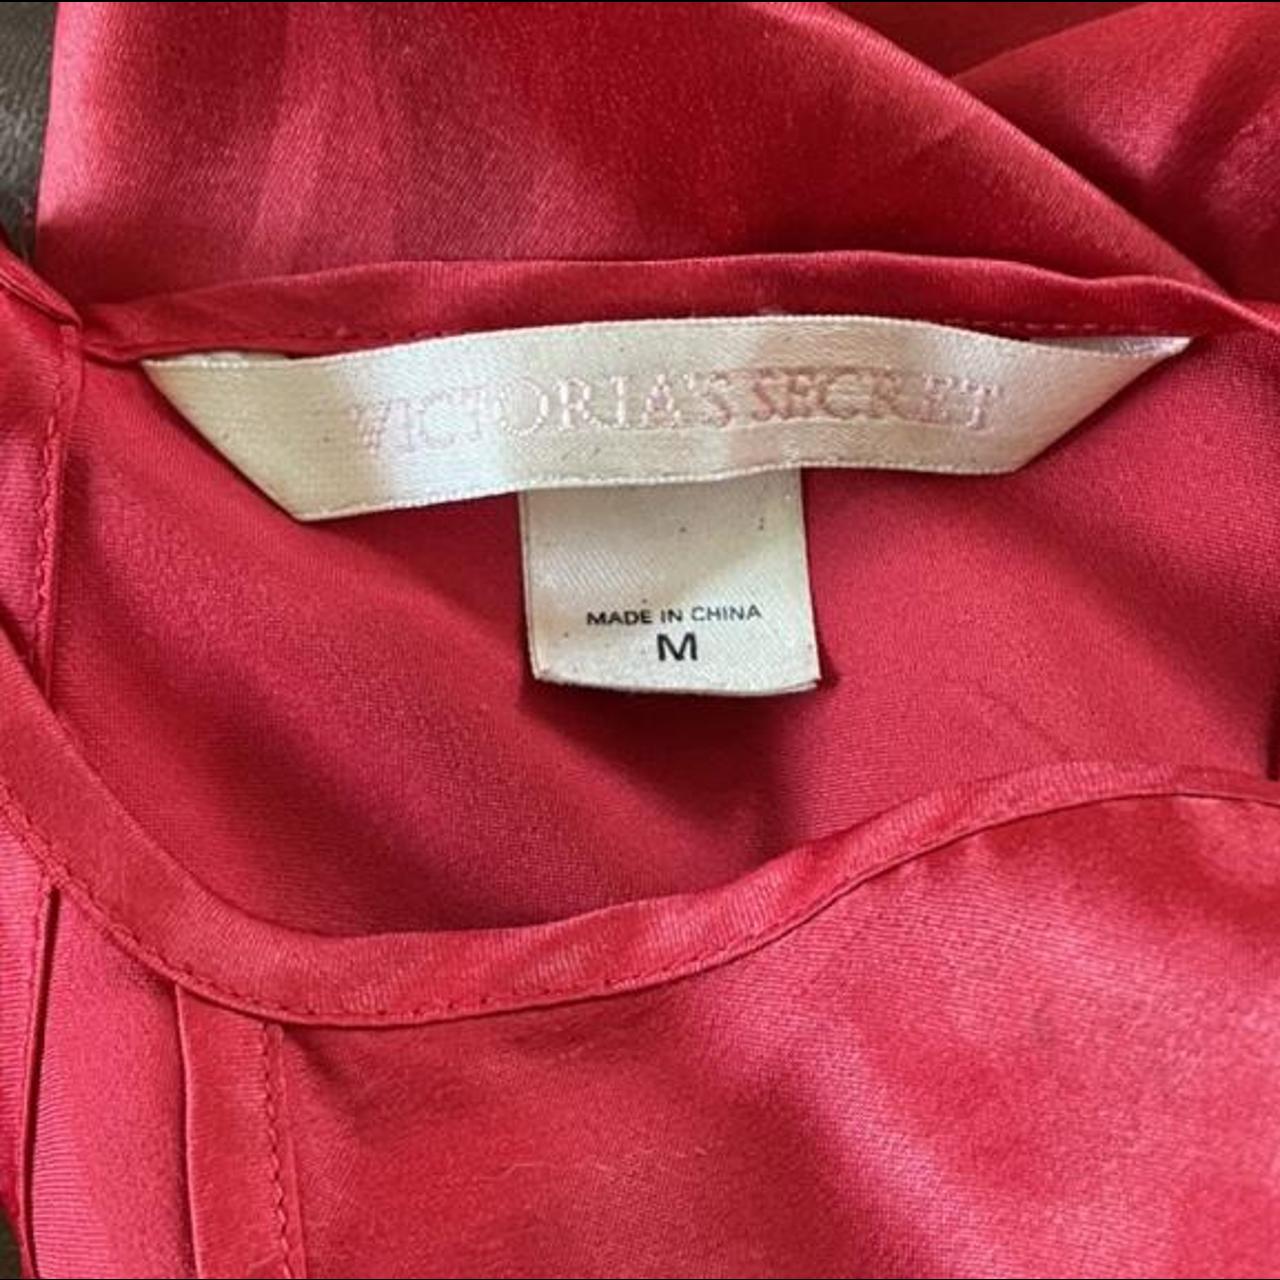 Red Victoria Secret slip dress Adjustable straps... - Depop